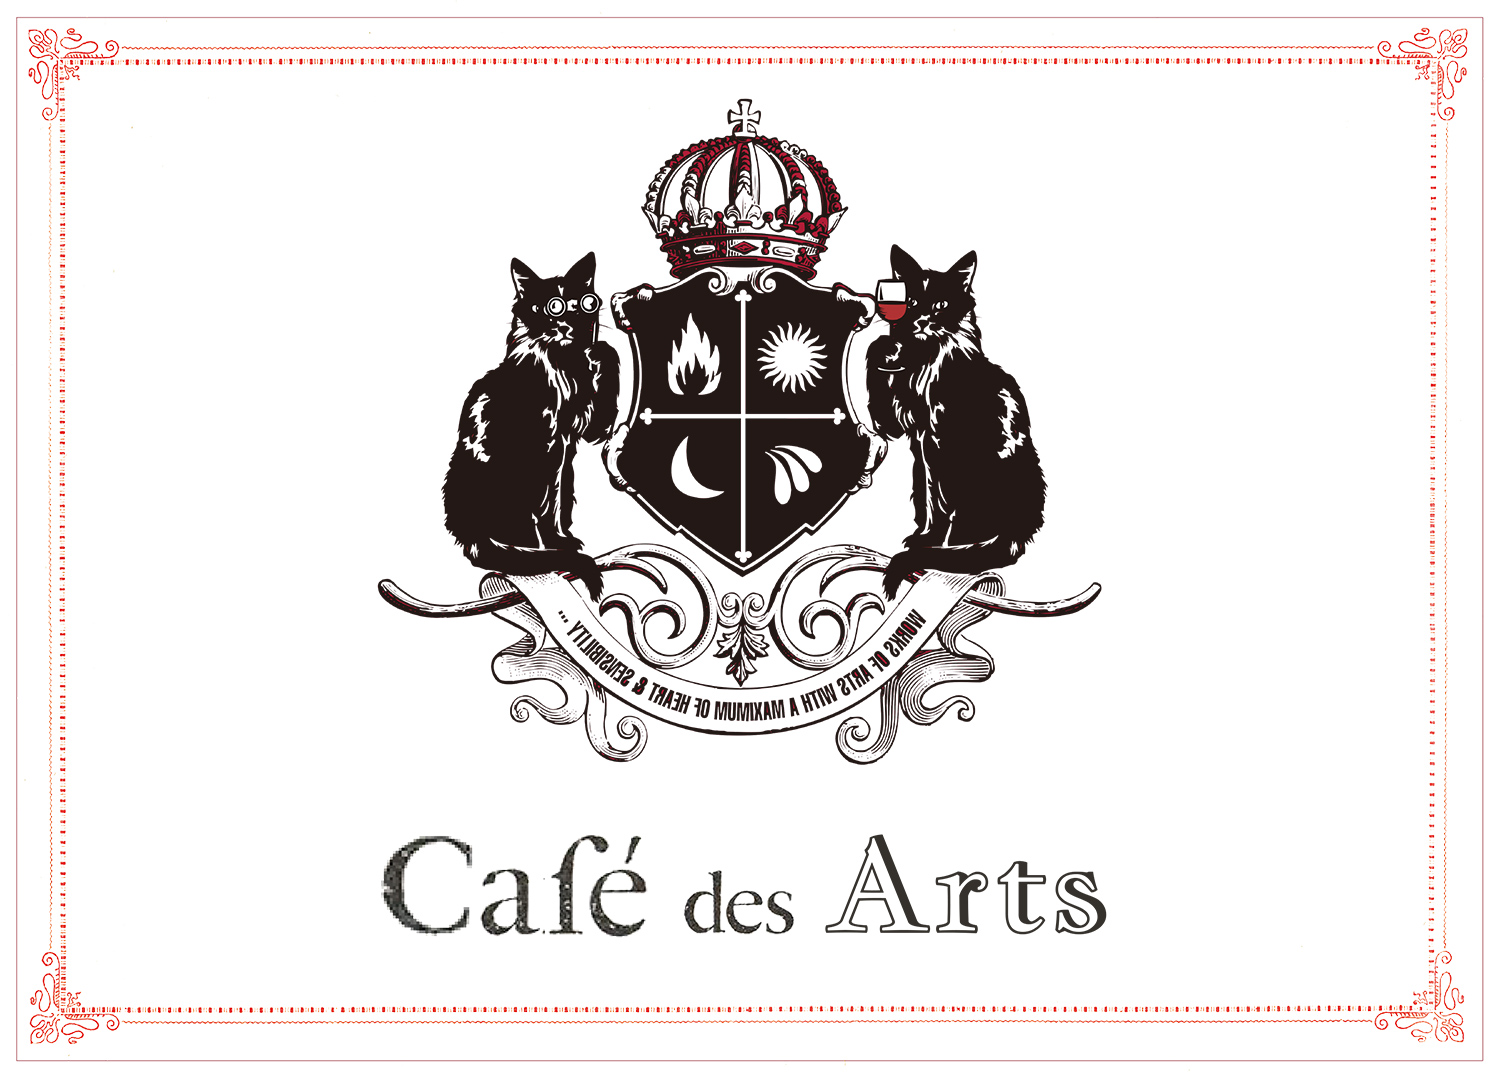 Café and Art